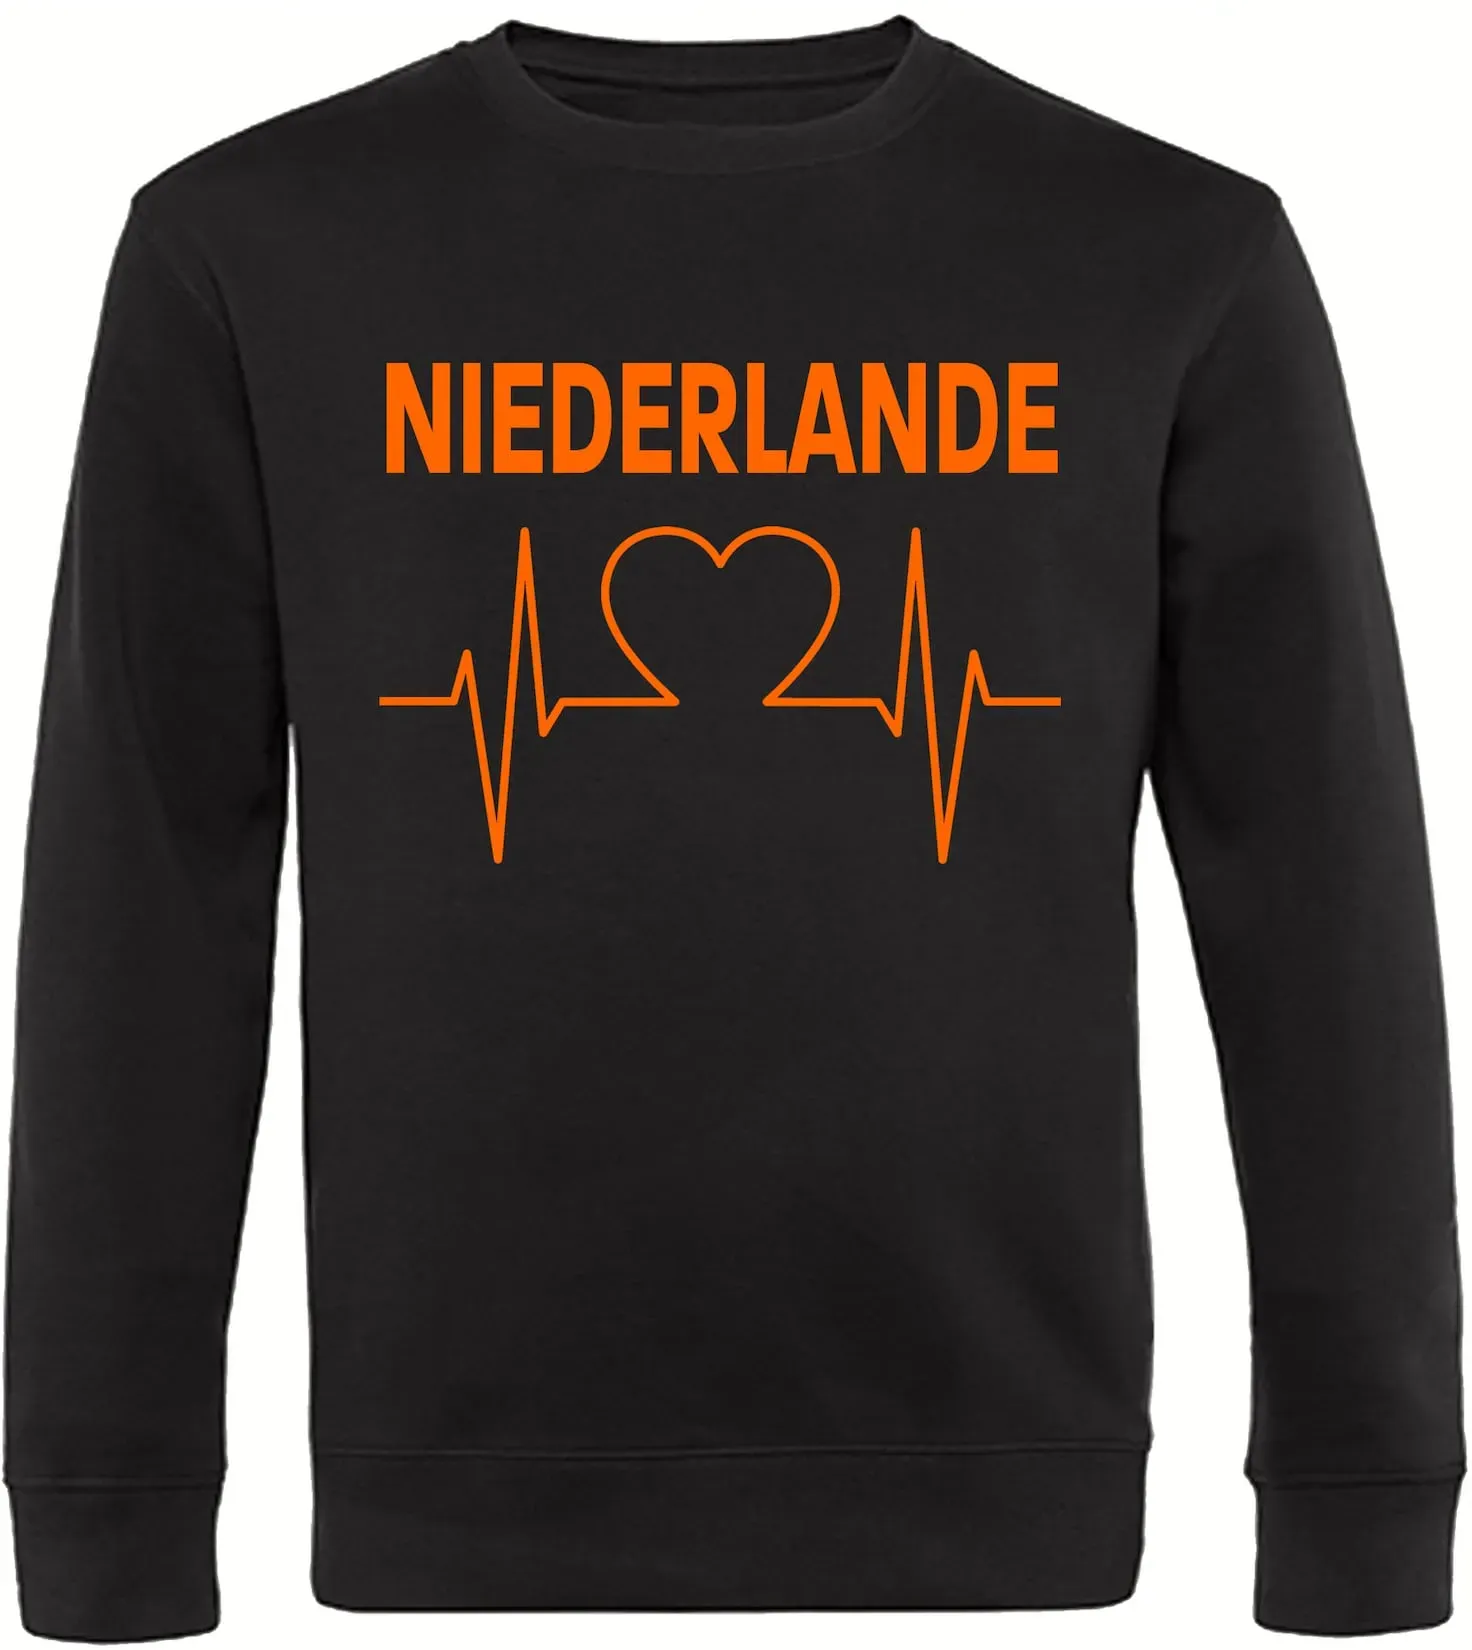 multifanshop® Sweatshirt  - Niederlande - Herzschlag - Druck orange